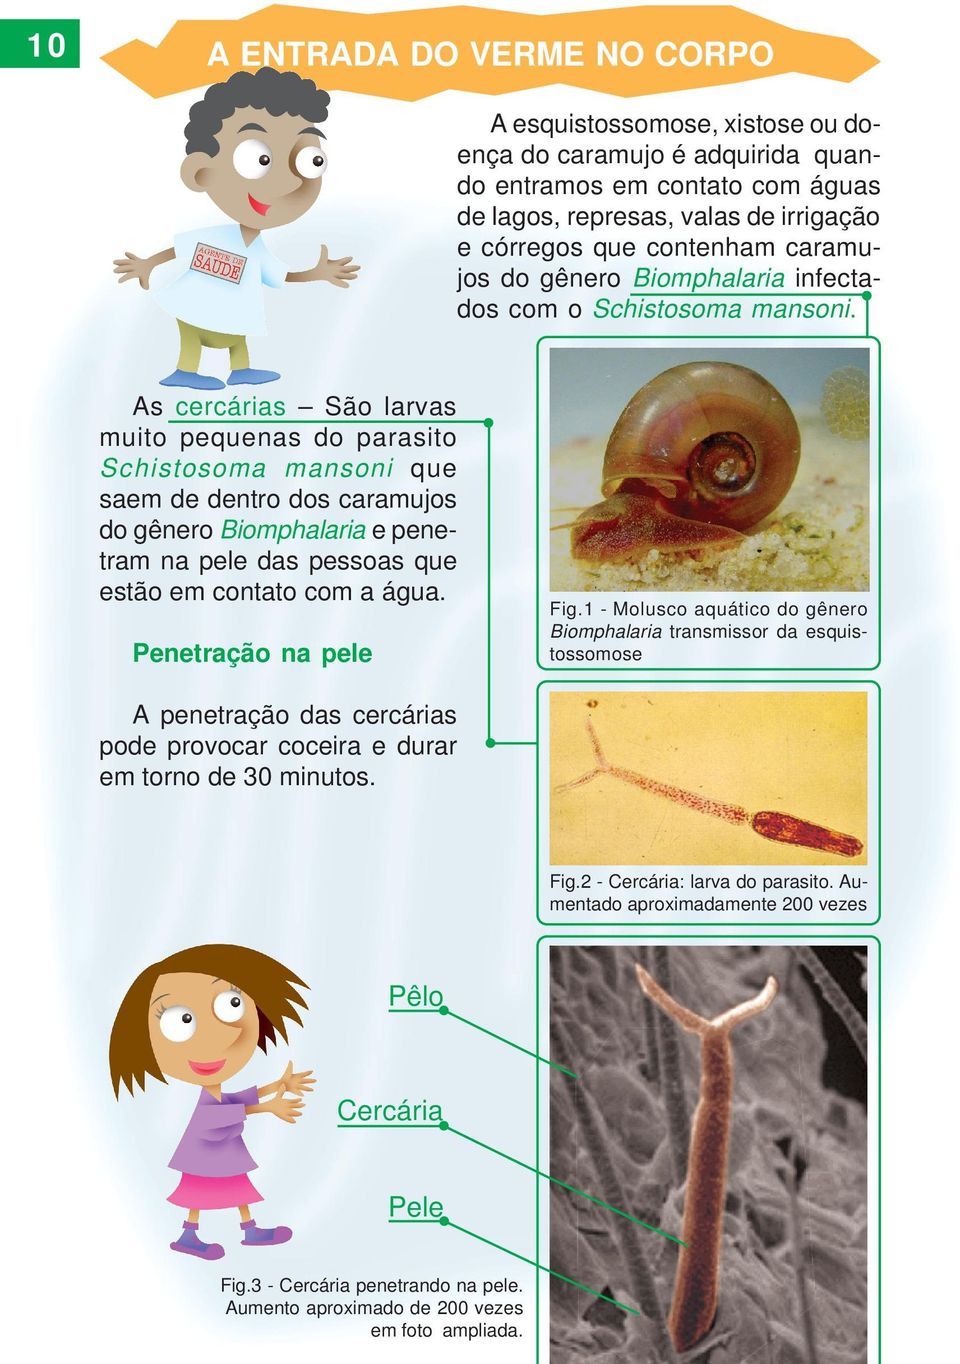 As cercárias São larvas muito pequenas do parasito Schistosoma mansoni que saem de dentro dos caramujos do gênero Biomphalaria e penetram na pele das pessoas que estão em contato com a água.